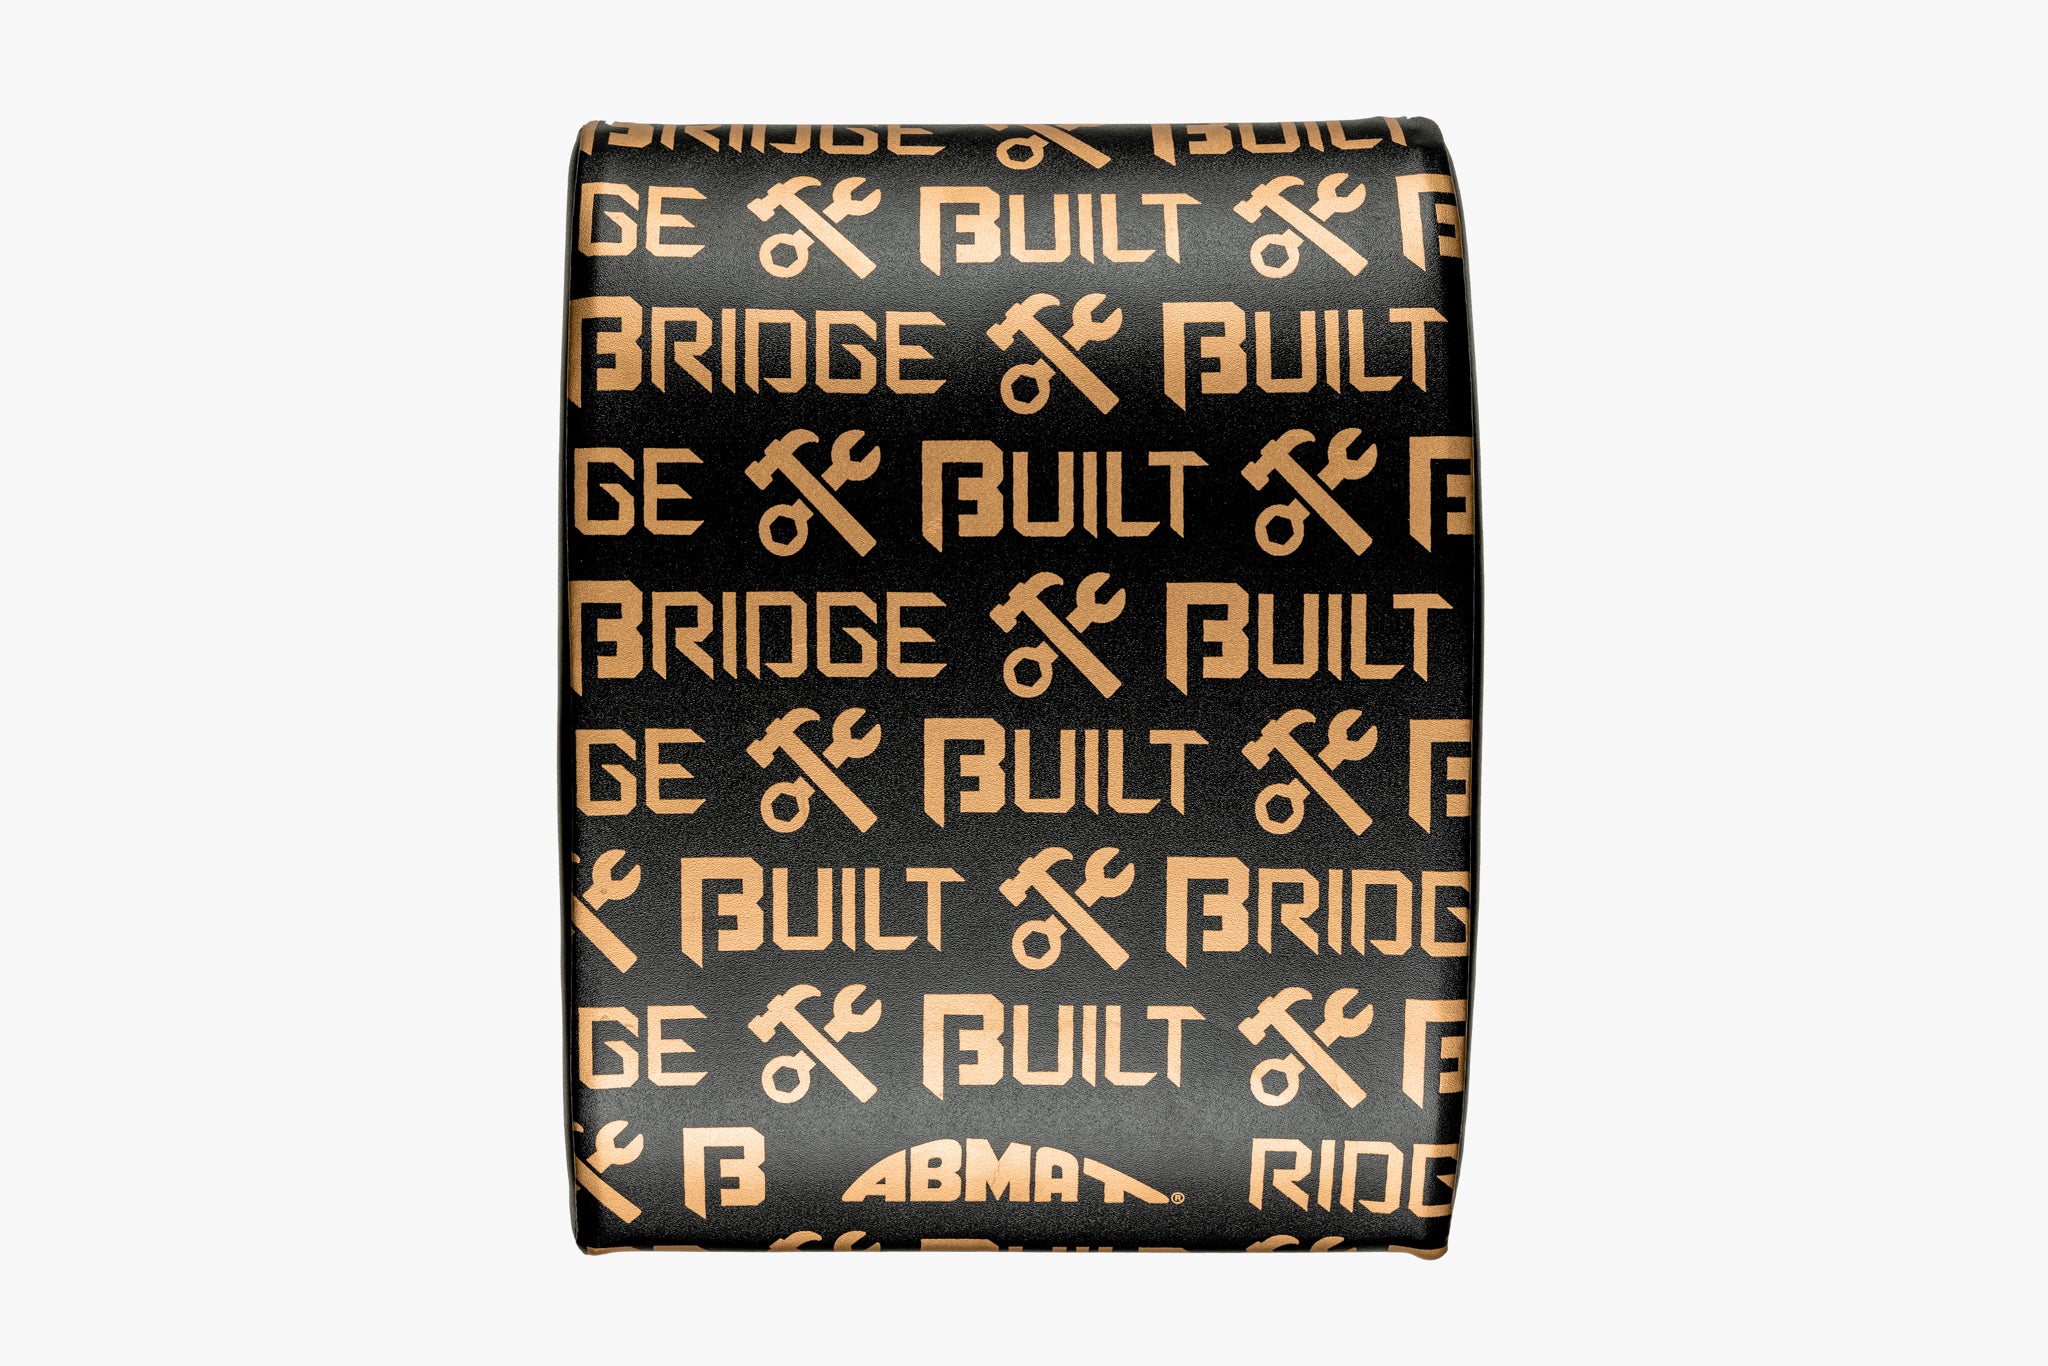 Bridge BUILT AbMat